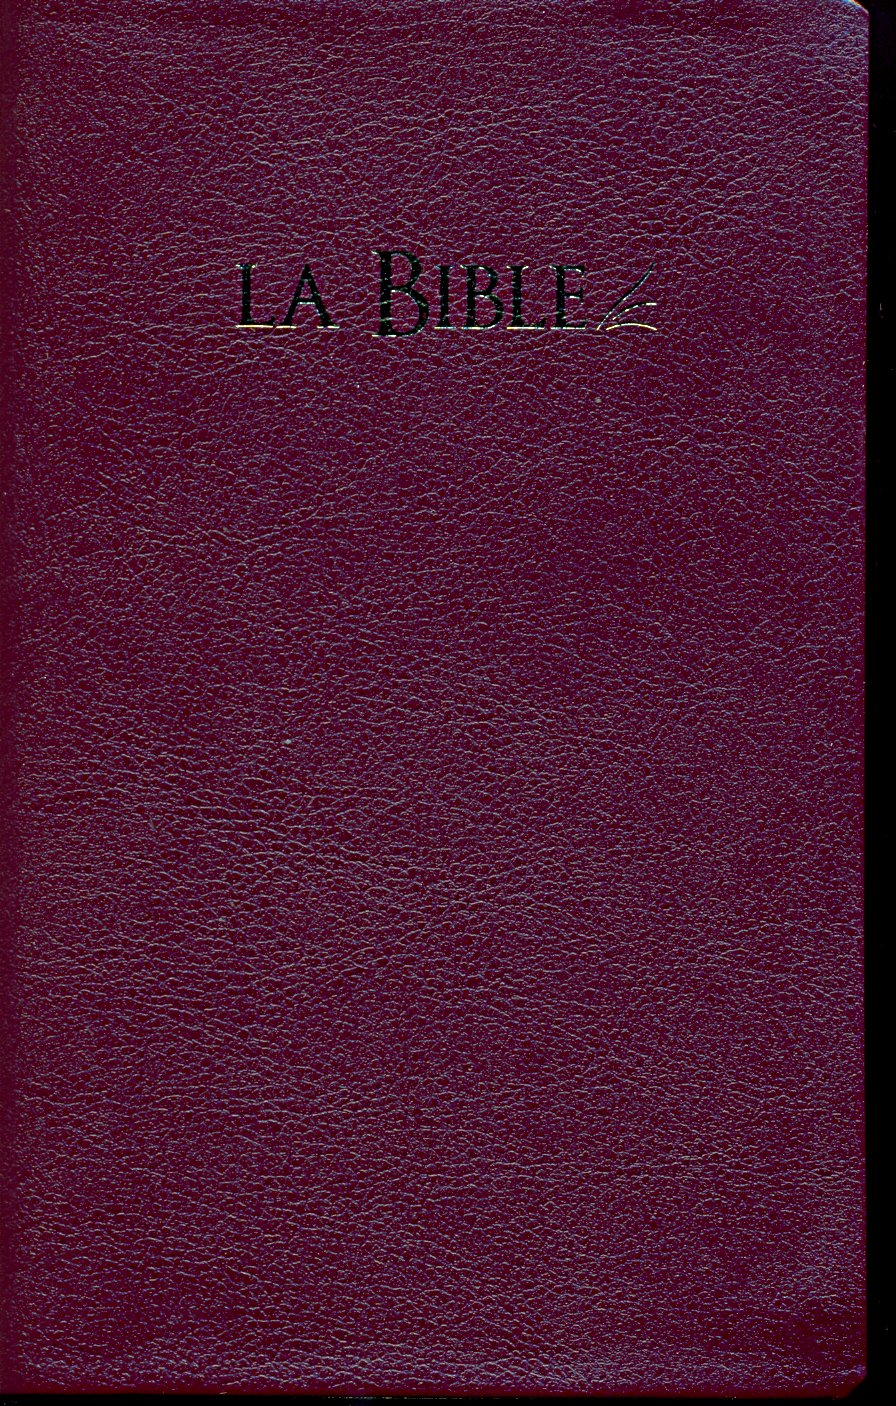 Bible segond 21 compacte, bordeaux - couverture souple, tranche or